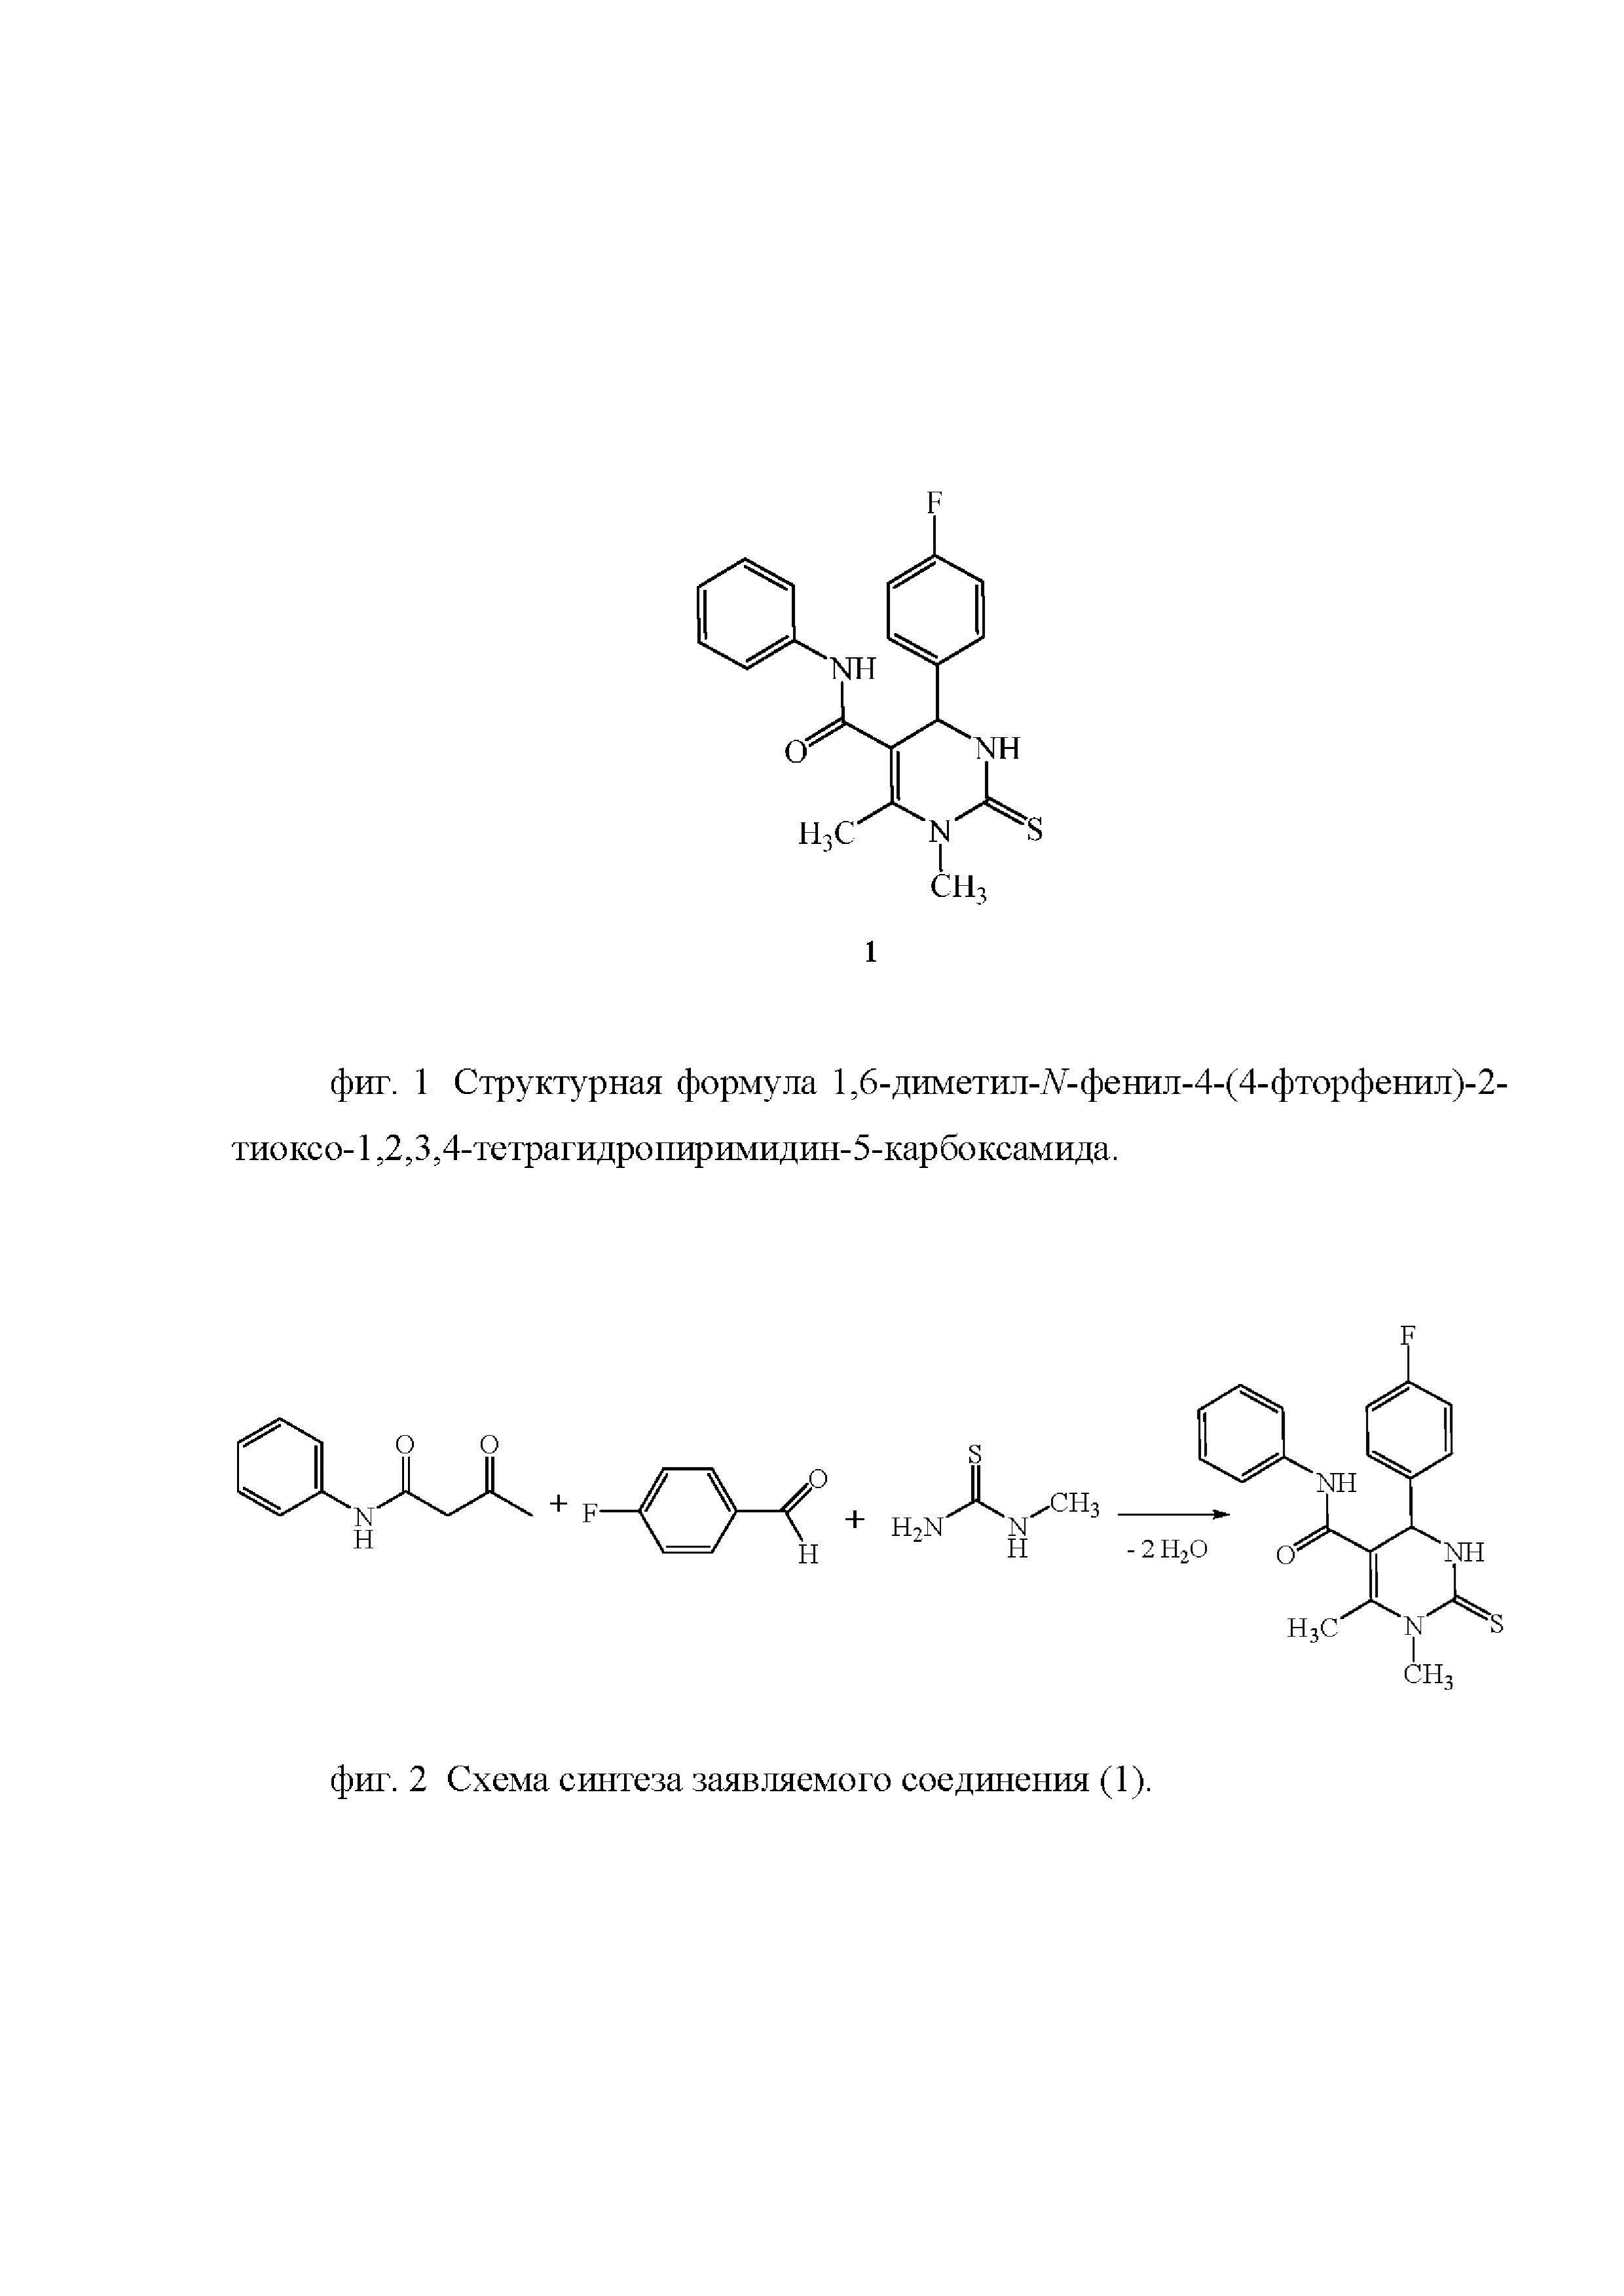 Применение 1,6-диметил-N-фенил-4-(4-фторфенил)-2-тиоксо-1,2,3,4-тетрагидропиримидин-5-карбоксамида в качестве средства, обладающего анальгетической активностью